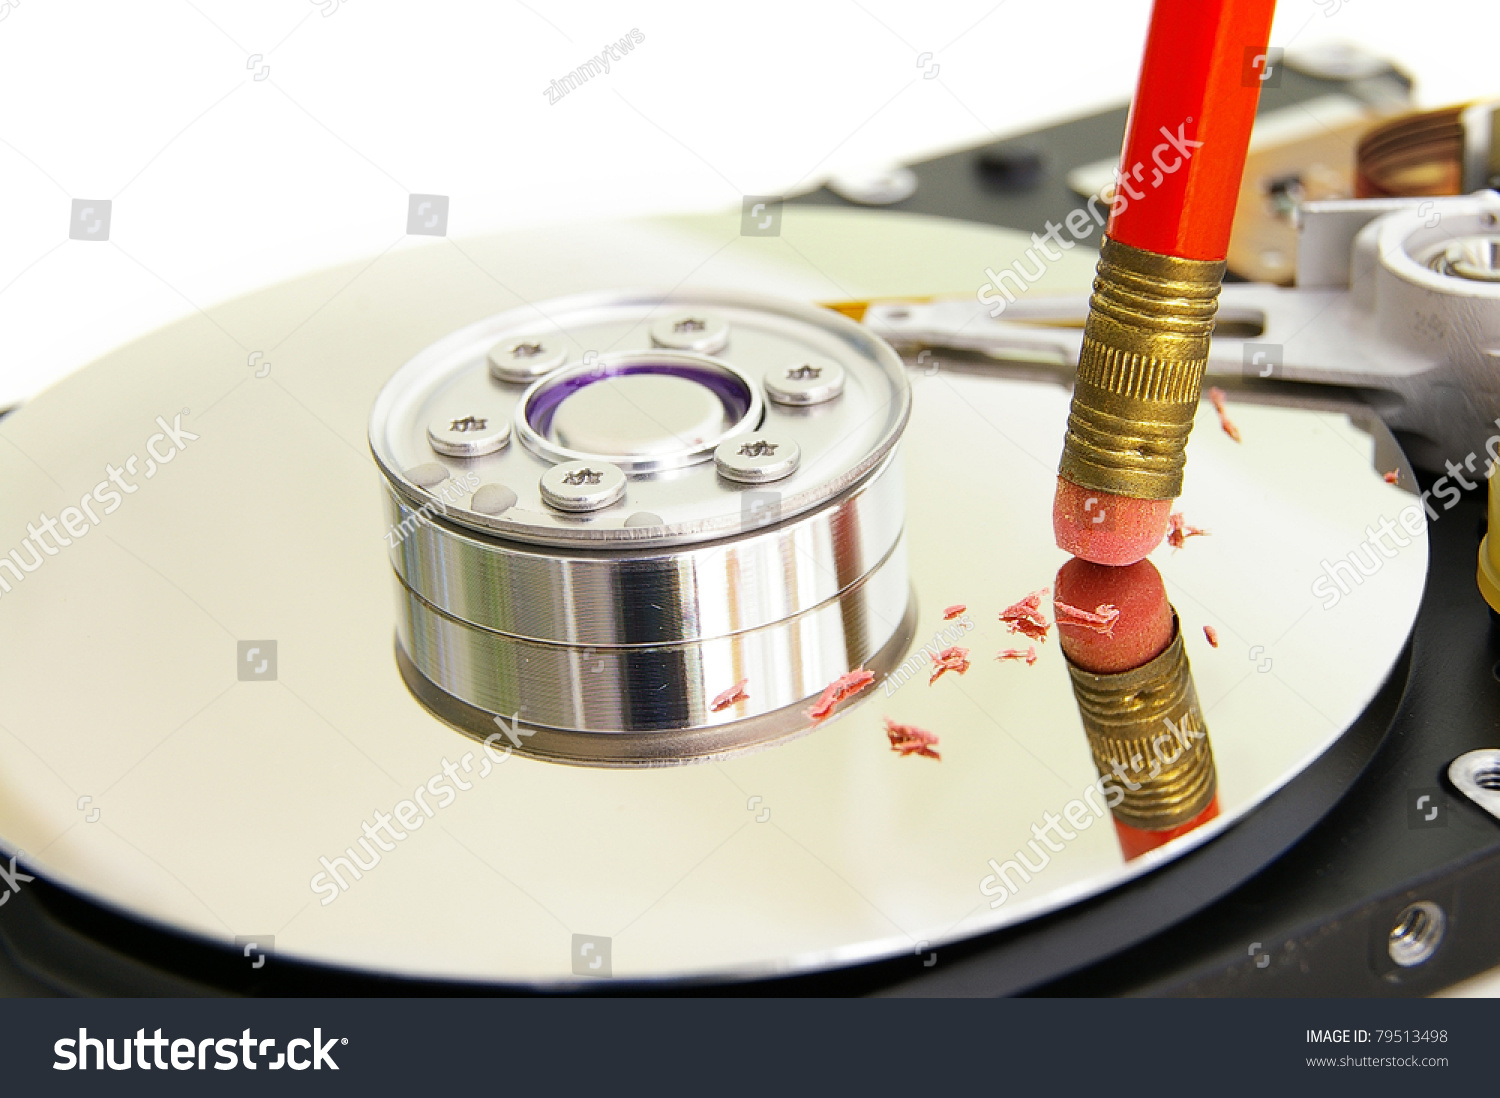 erase computer hard drive